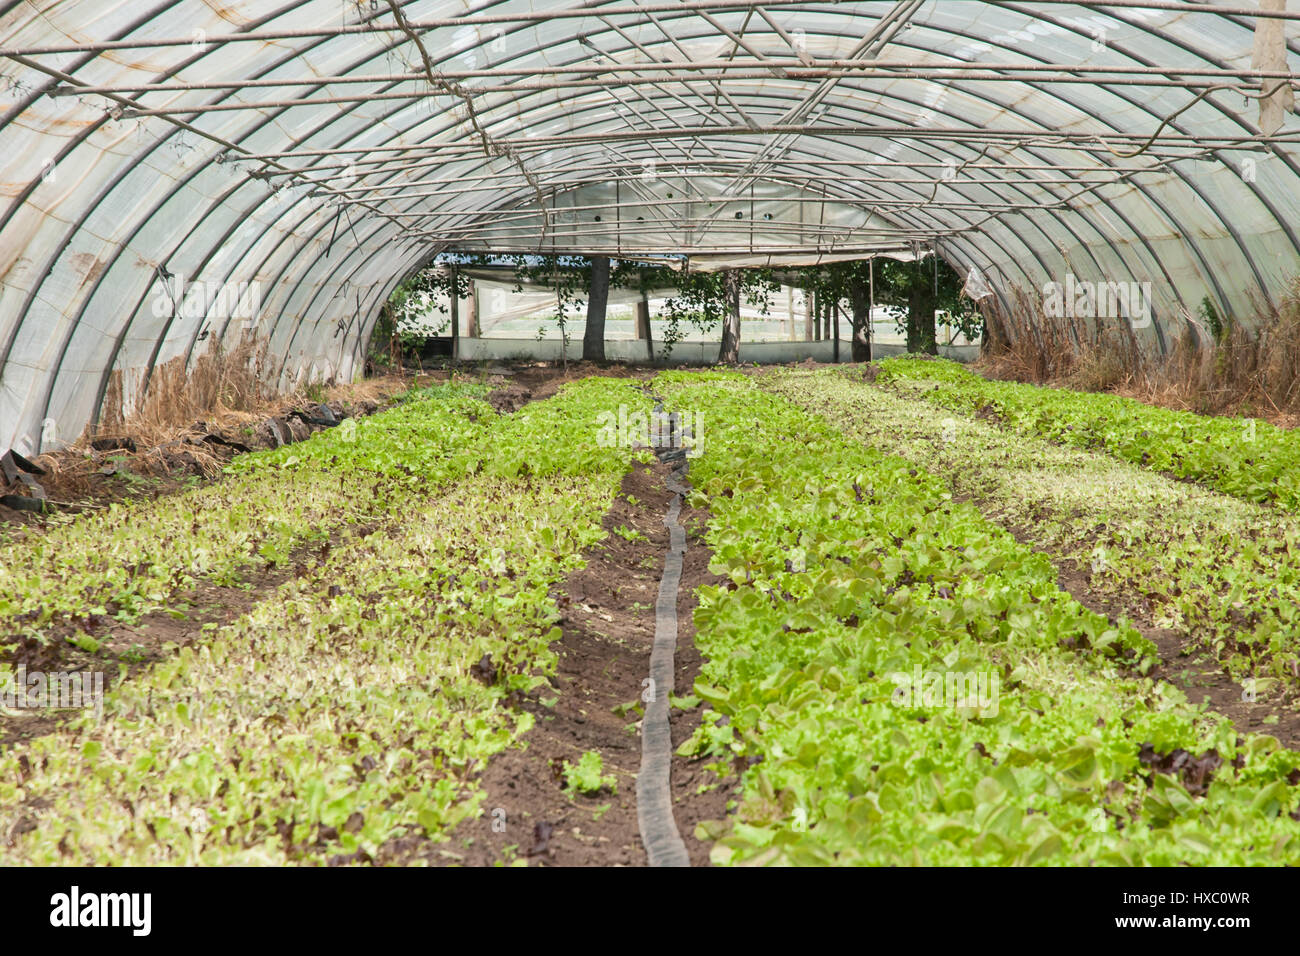 Los cultivos orgánicos crecen en un invernadero cubierto de plástico  (polytunnel Fotografía de stock - Alamy